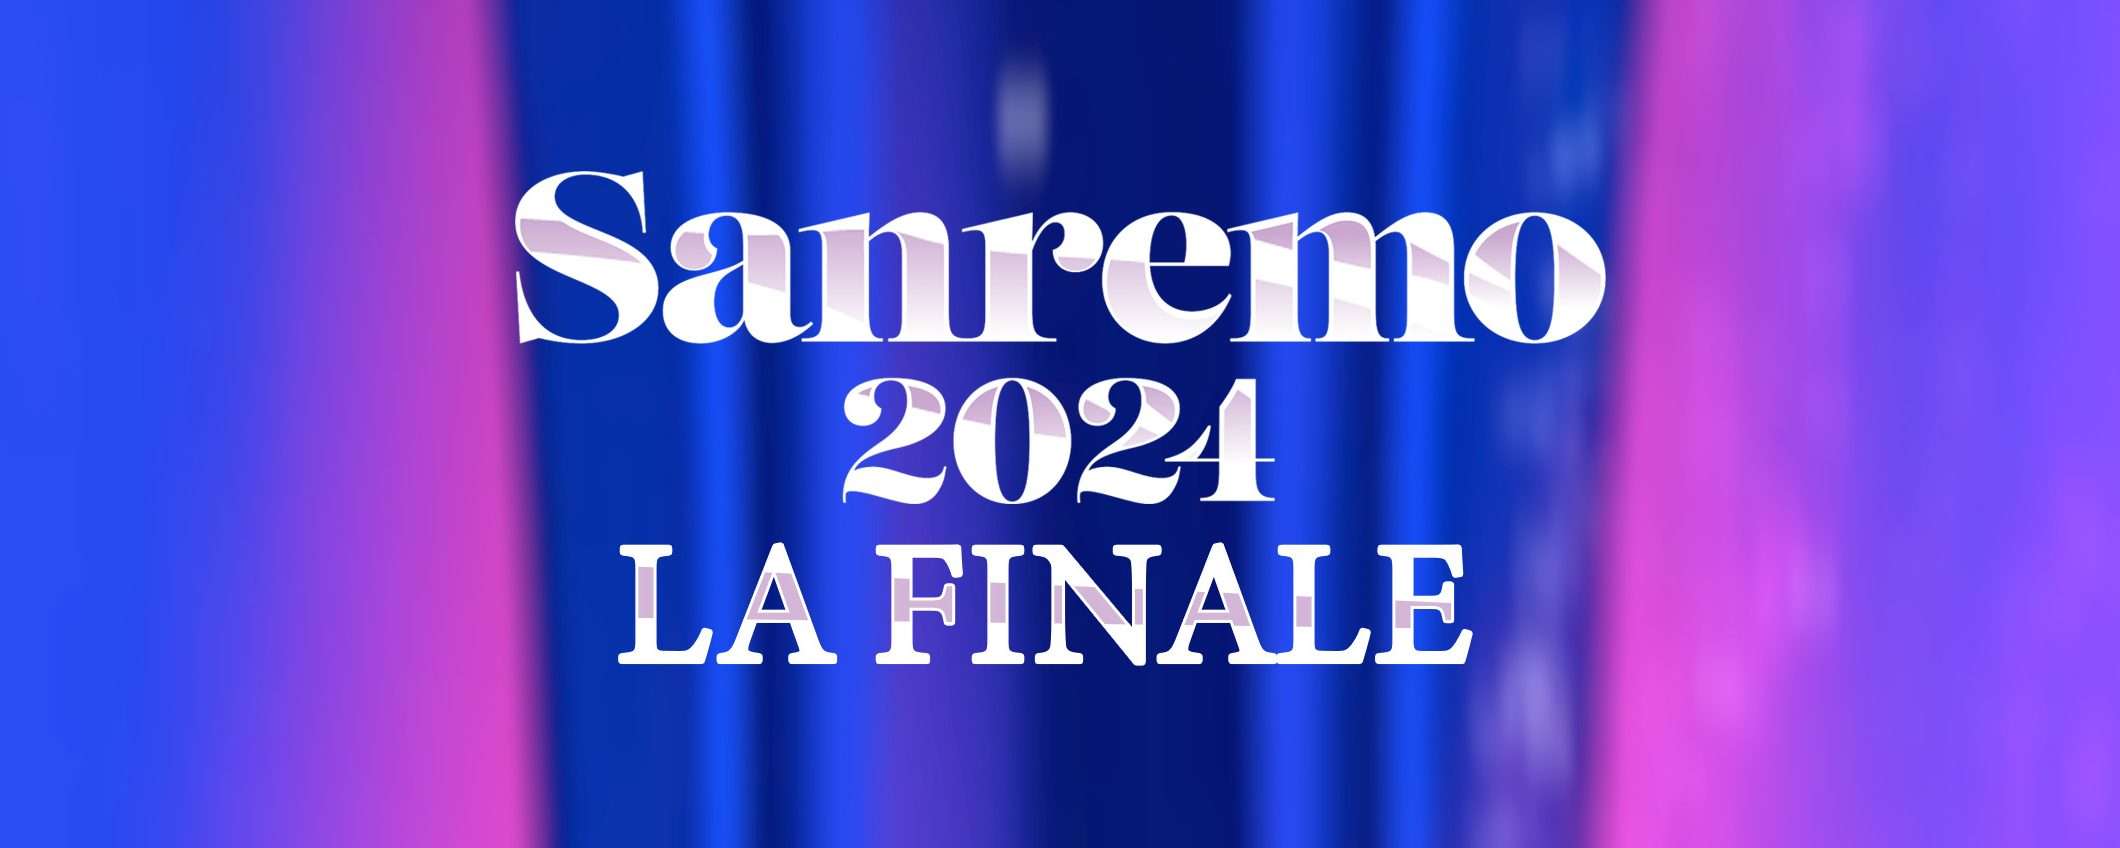 Sanremo, la finale: come vederla dall'estero in streaming gratis